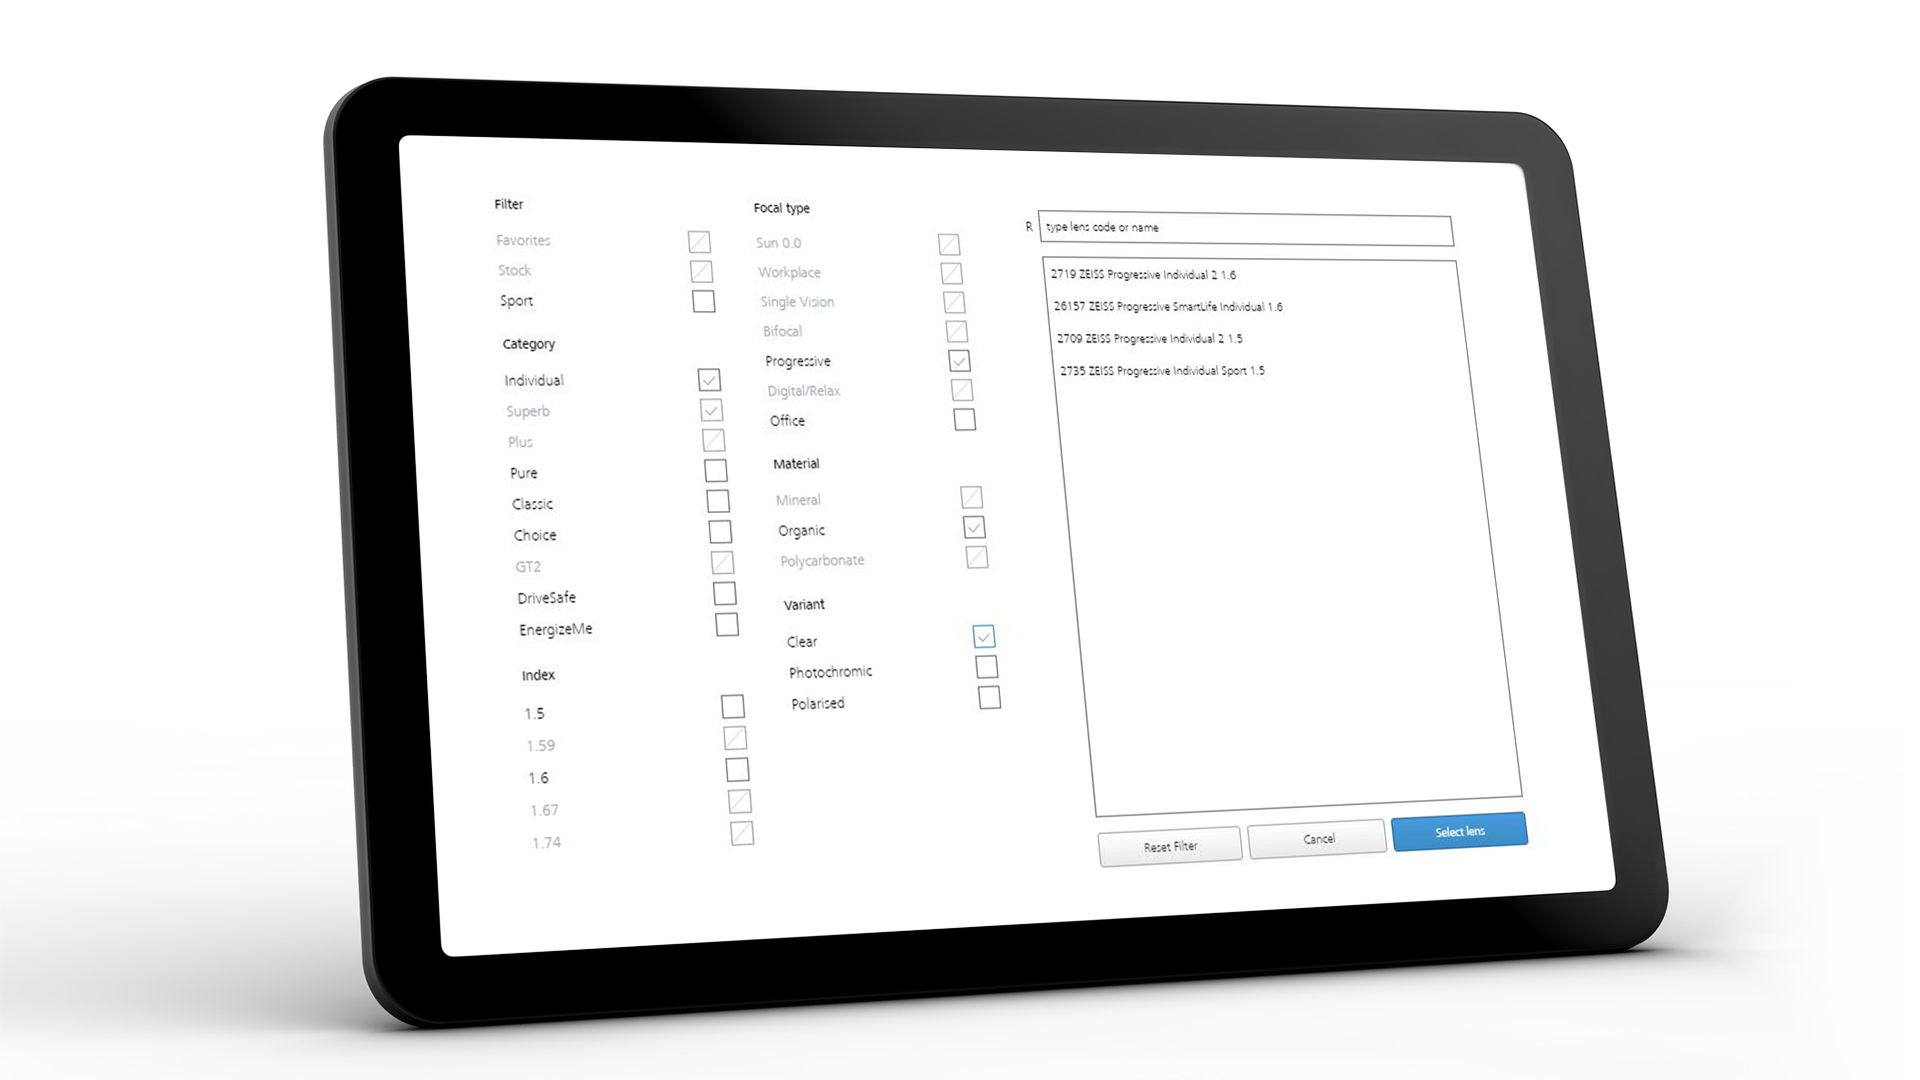 Pantalla de tableta con la interfaz de ZEISS VISUSTORE para varios mensajes de ayuda 